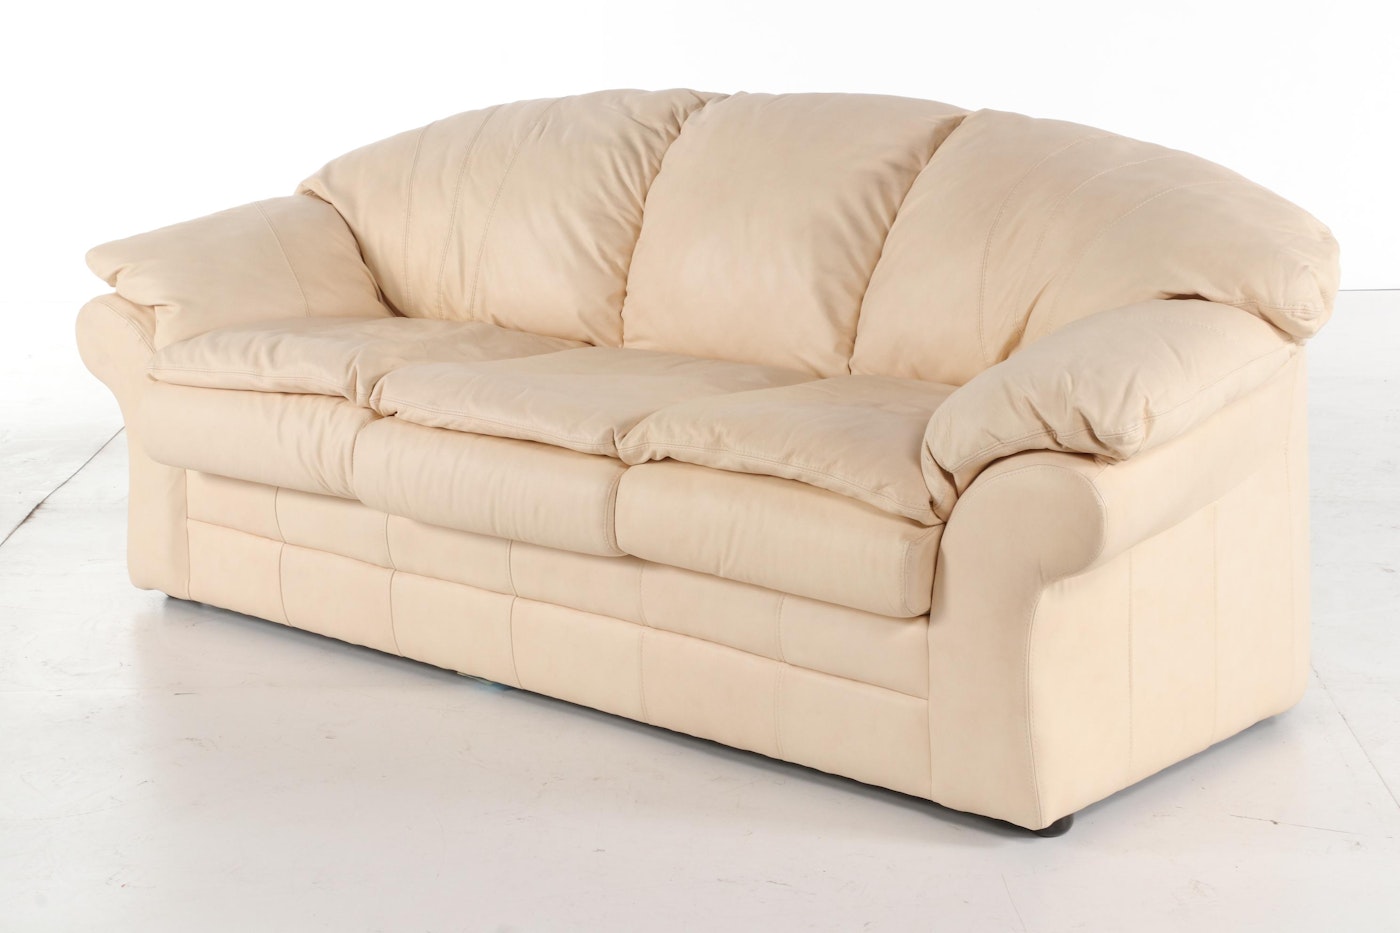 sealy furniture leather sofa